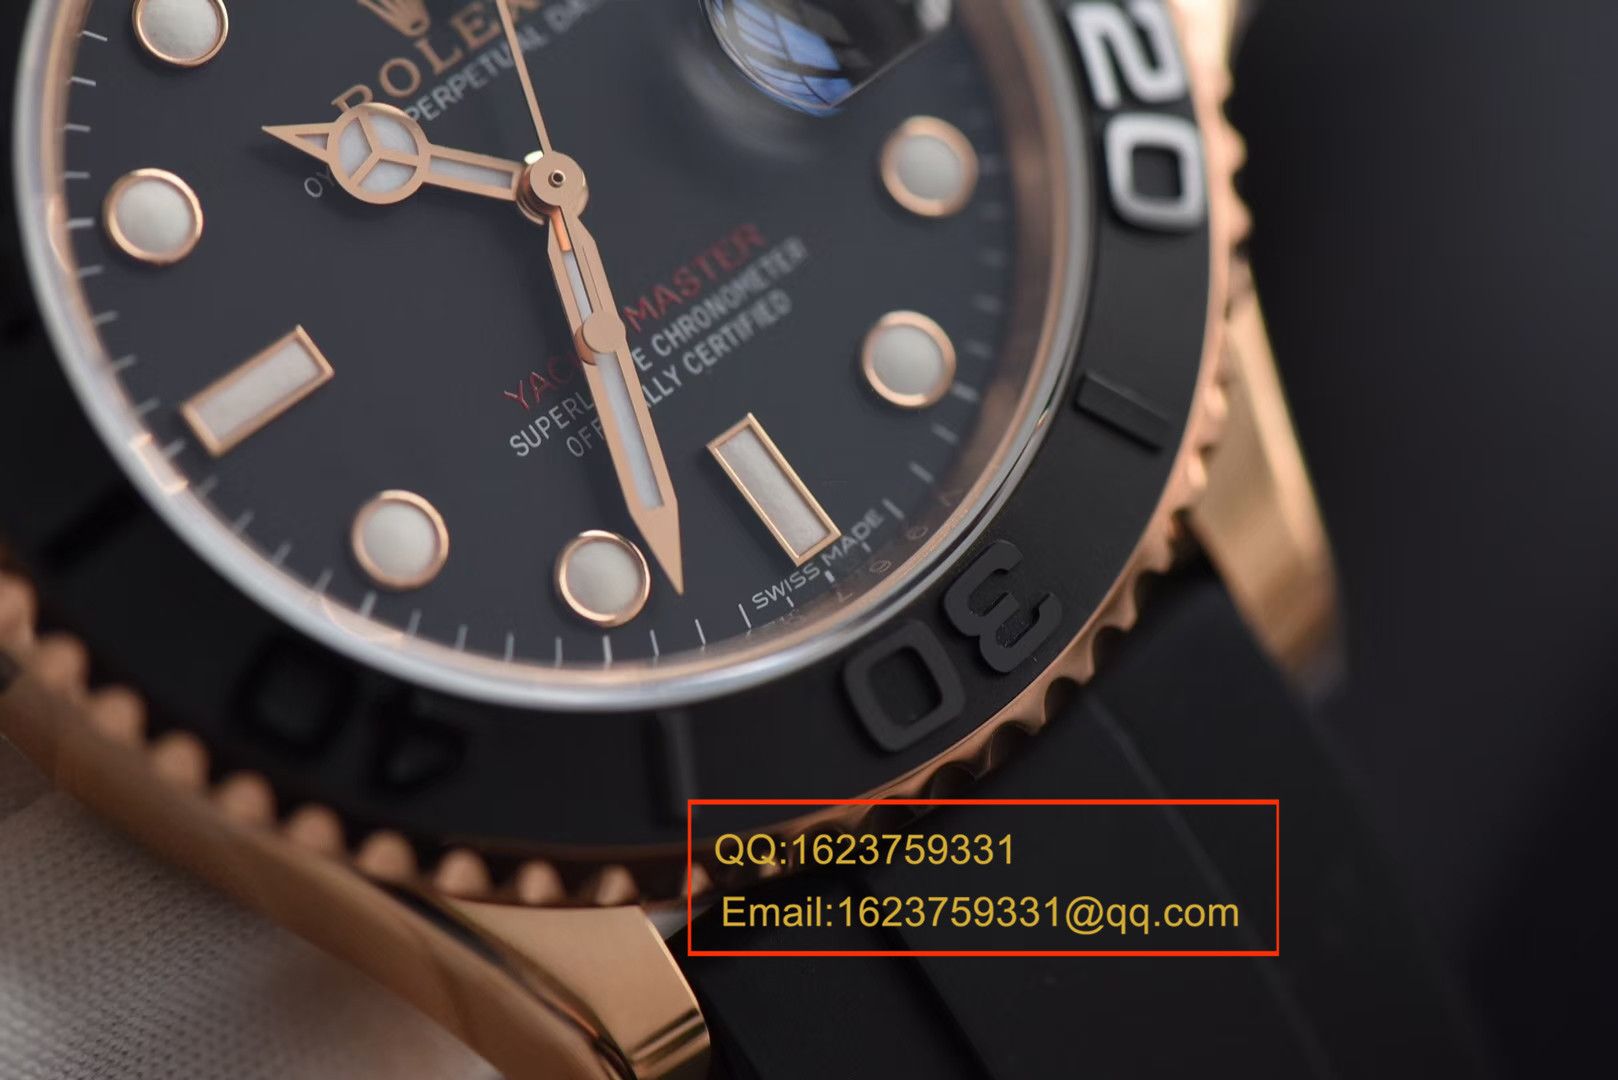 【视频评测JF一比一超A精仿手表】劳力士游艇名仕型系列116655-Oysterflex bracelet男士腕表 